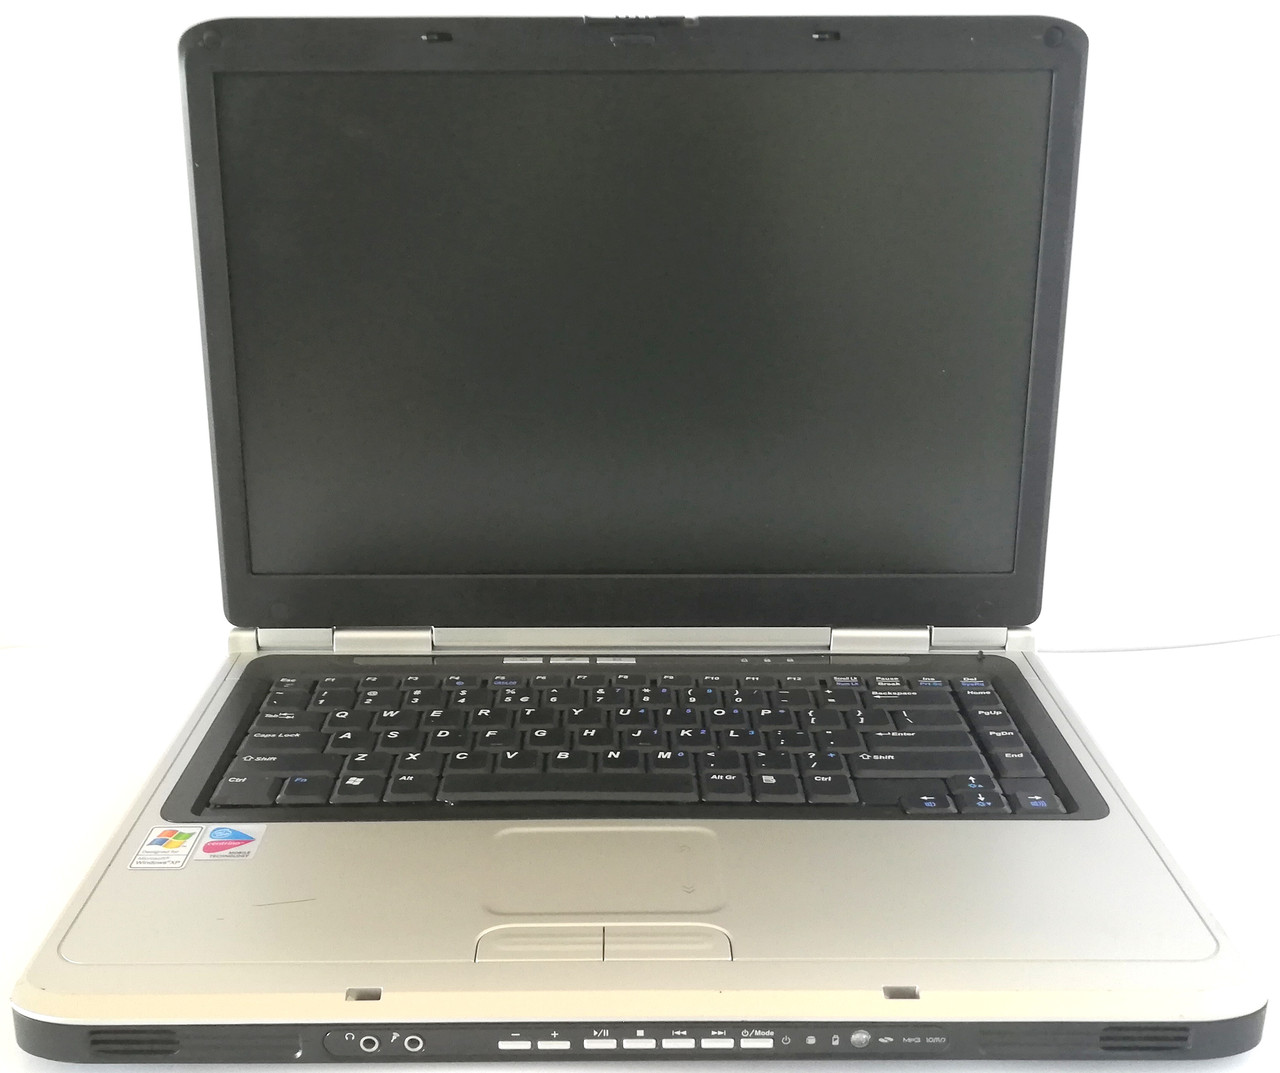 Ноутбук Paradigit Voyager 9250 15.6" Intel Pentium M 1.73 ГГц 256MB Silver Б/В